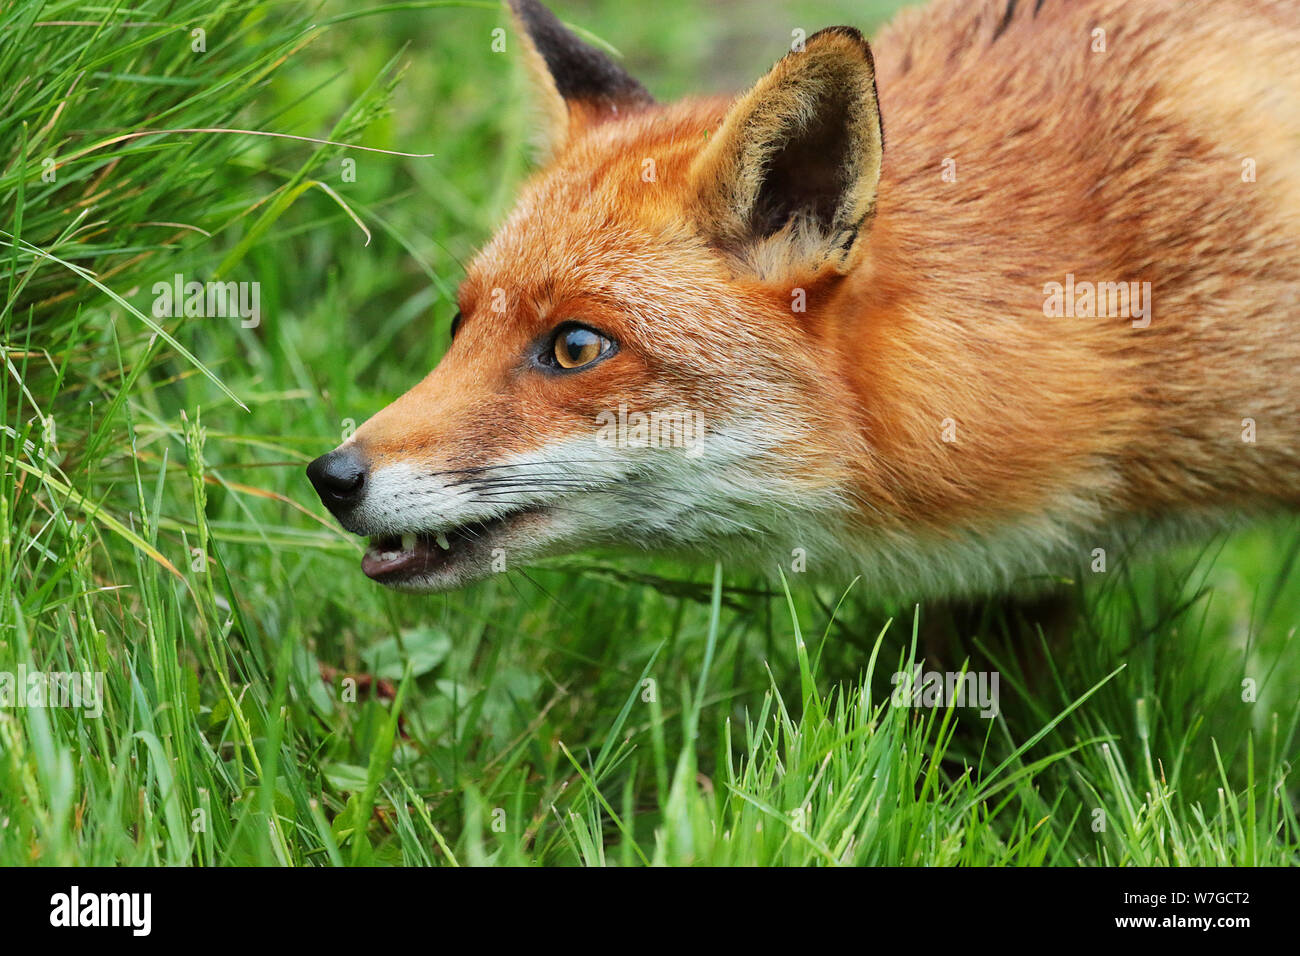 Le renard roux (Vulpes vulpes) : est une espèce emblématique de la faune. Avec sa fourrure rouge queue touffue et c'est juste beau à regarder. Banque D'Images